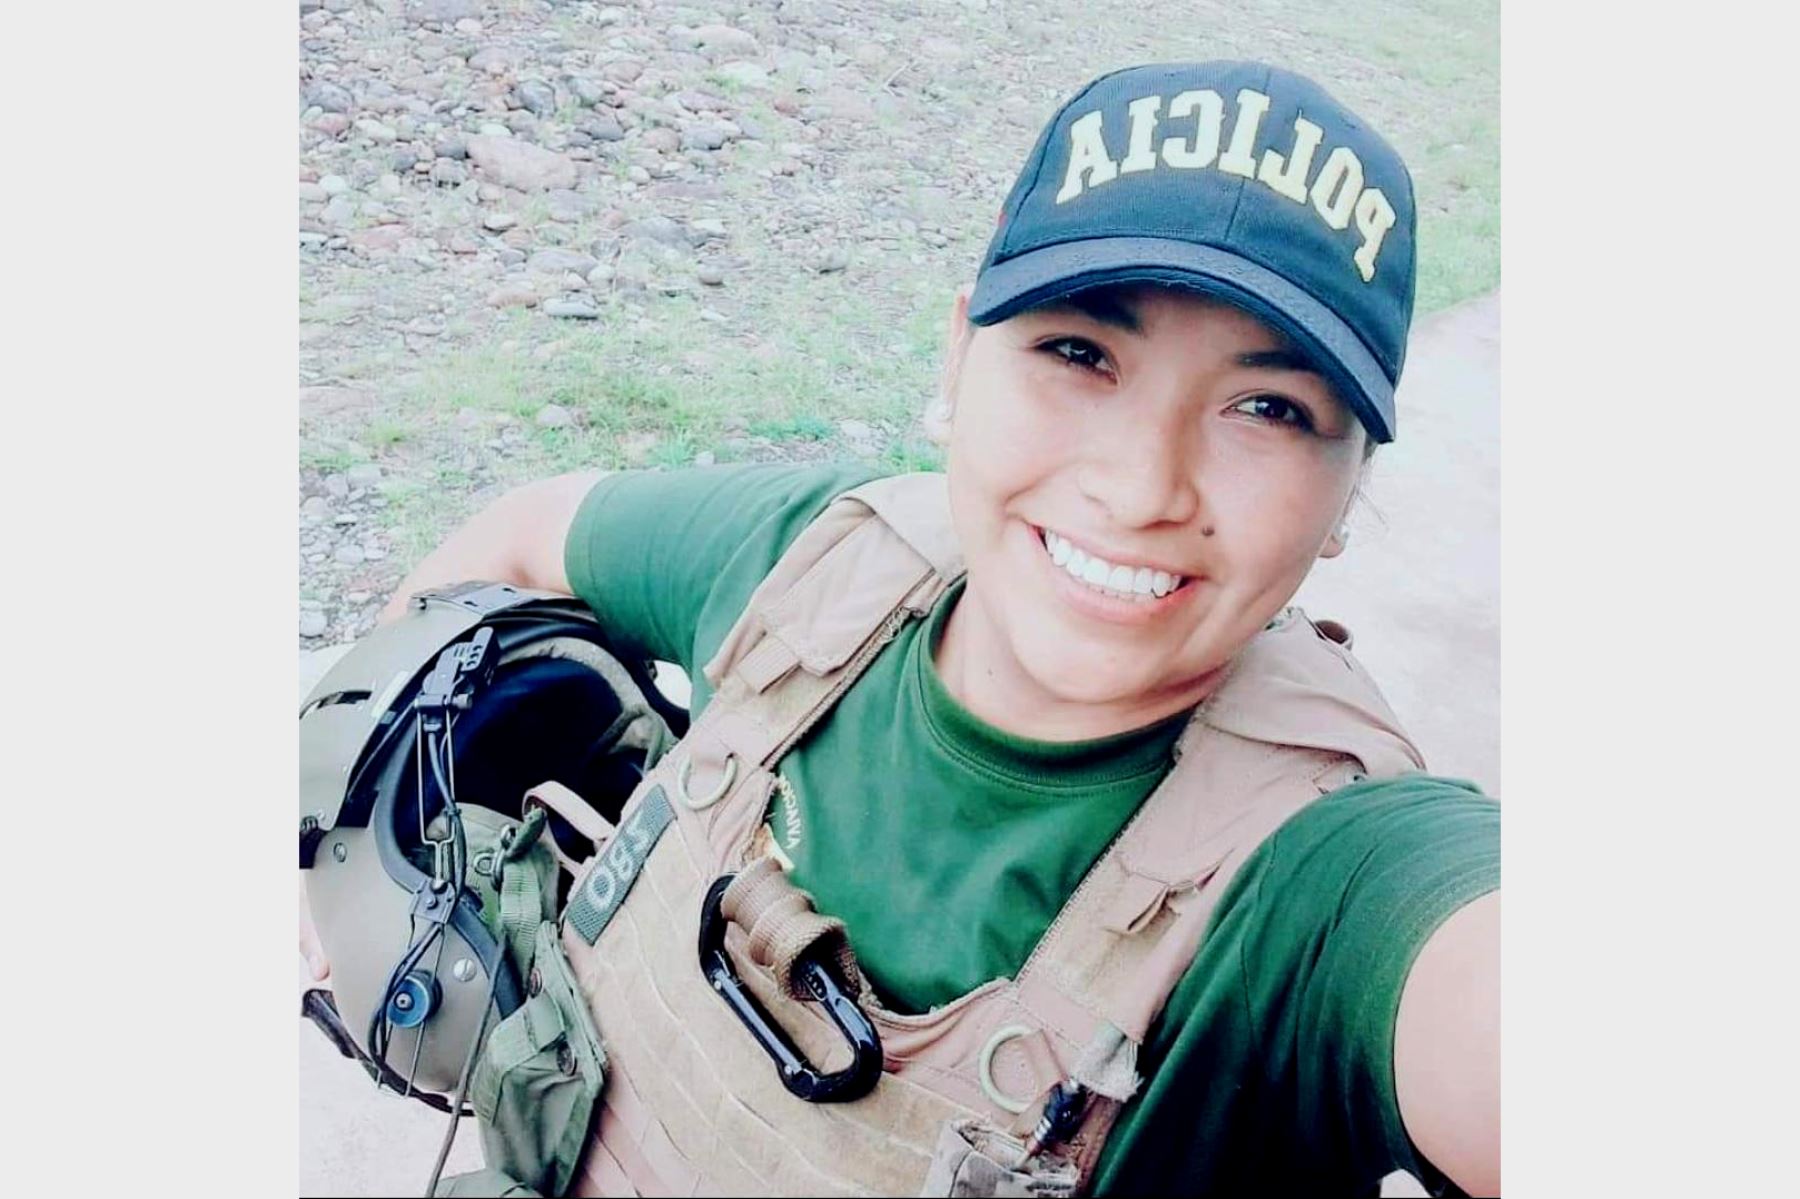  La suboficial Verónica Brenda Gargate Coaguila tiene la especialidad de paramédico de combate. Participó en el rescate en helicóptero de una persona que quedó atrapada en edificio durante el incendio que consumió inmueble en la cuadra 10 de jirón Áncash en el Cercado de Lima. Foto: Mininter